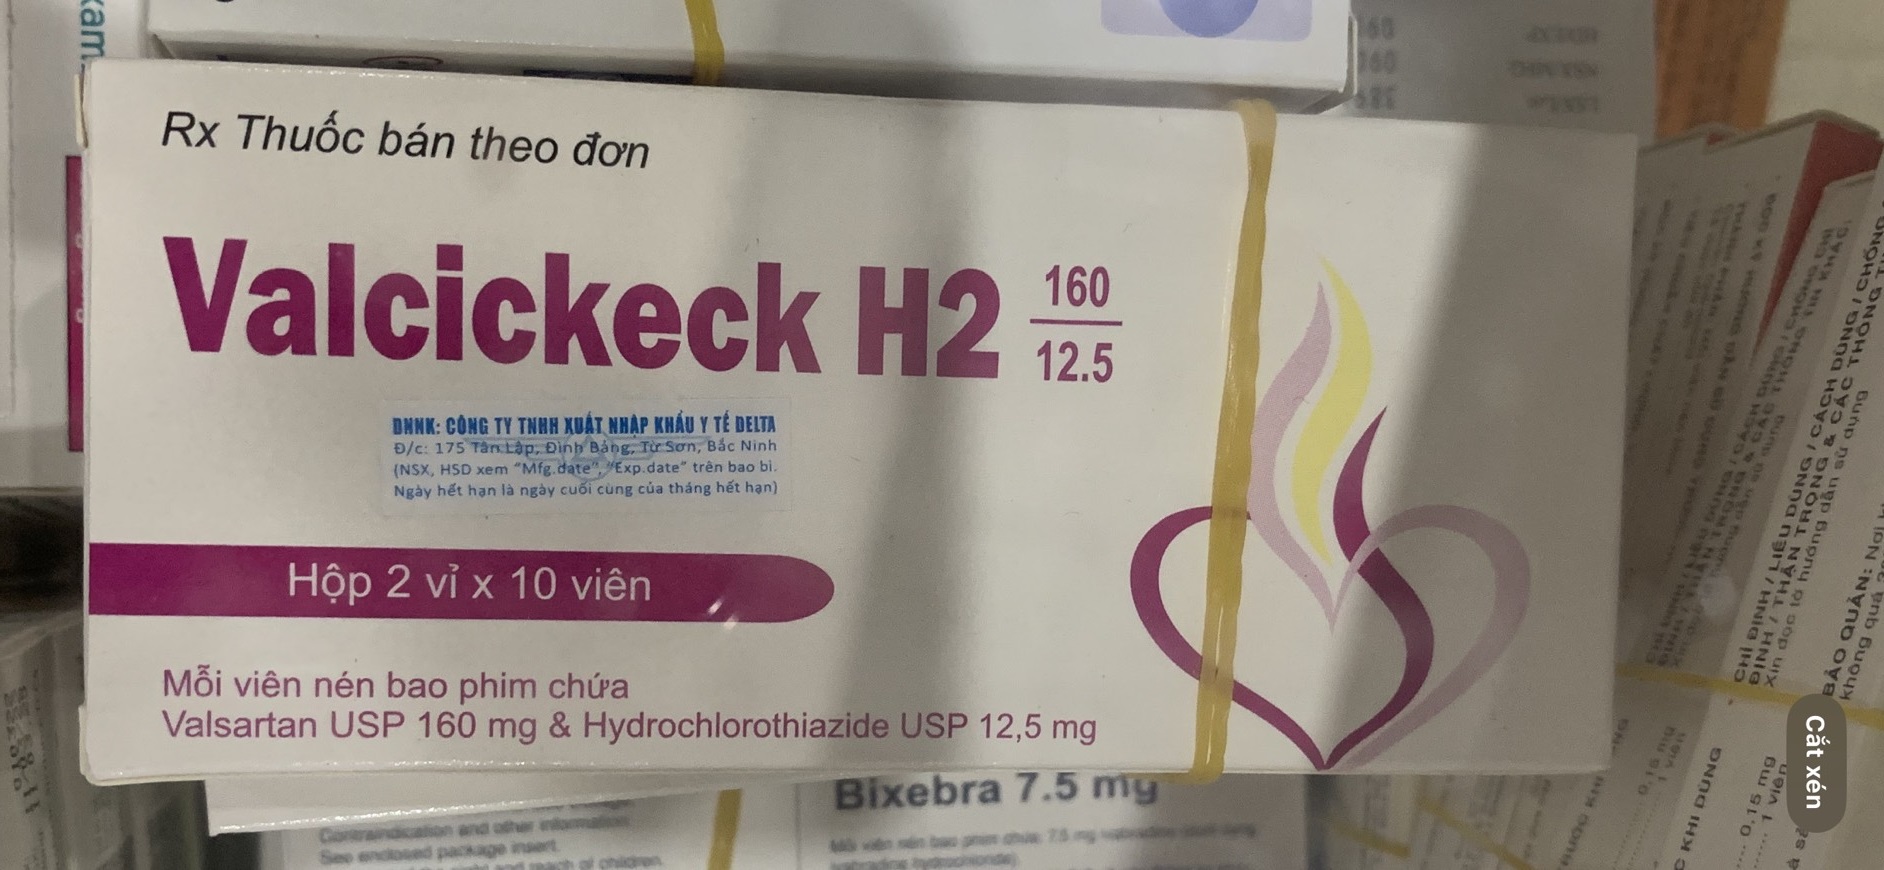 Valcickeck H2